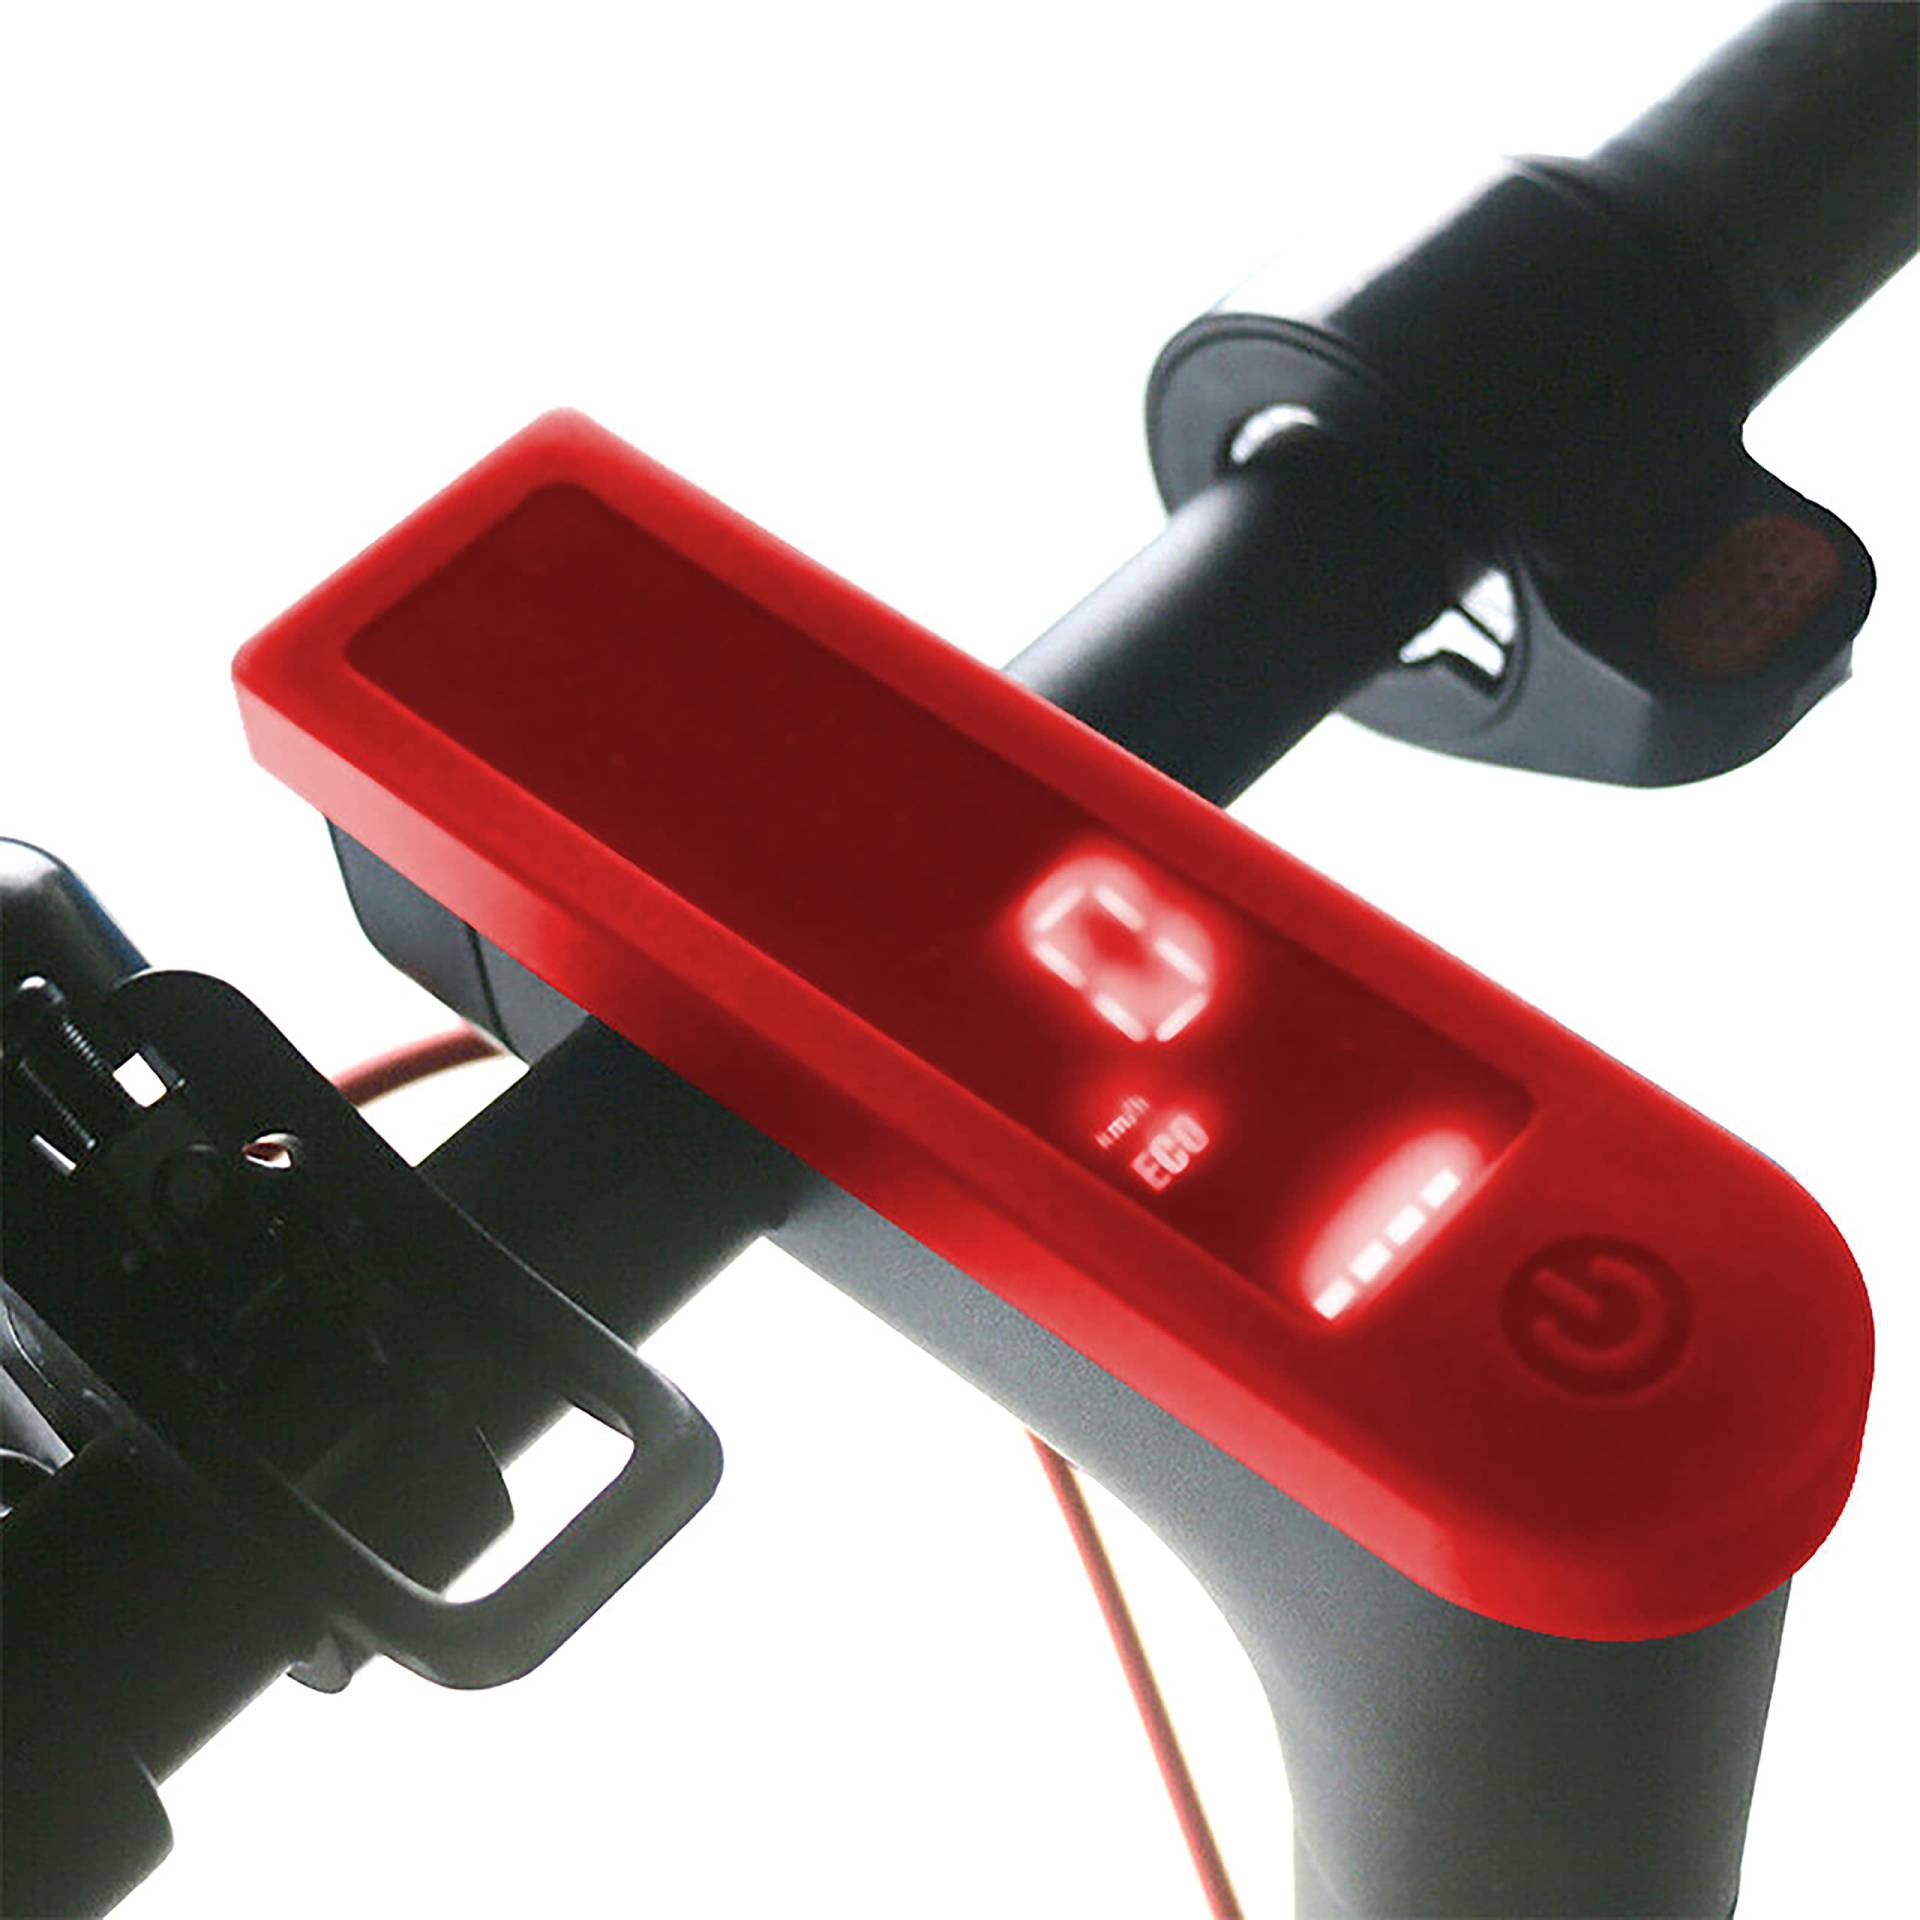 Yungeln Scooter Dashboard Silikonhülle wasserdicht transparente Abdeckung des Displays kompatibel mit Xiaomi 1S M365 Pro, ESA 5000 Elektrisch Scooter von Yungeln